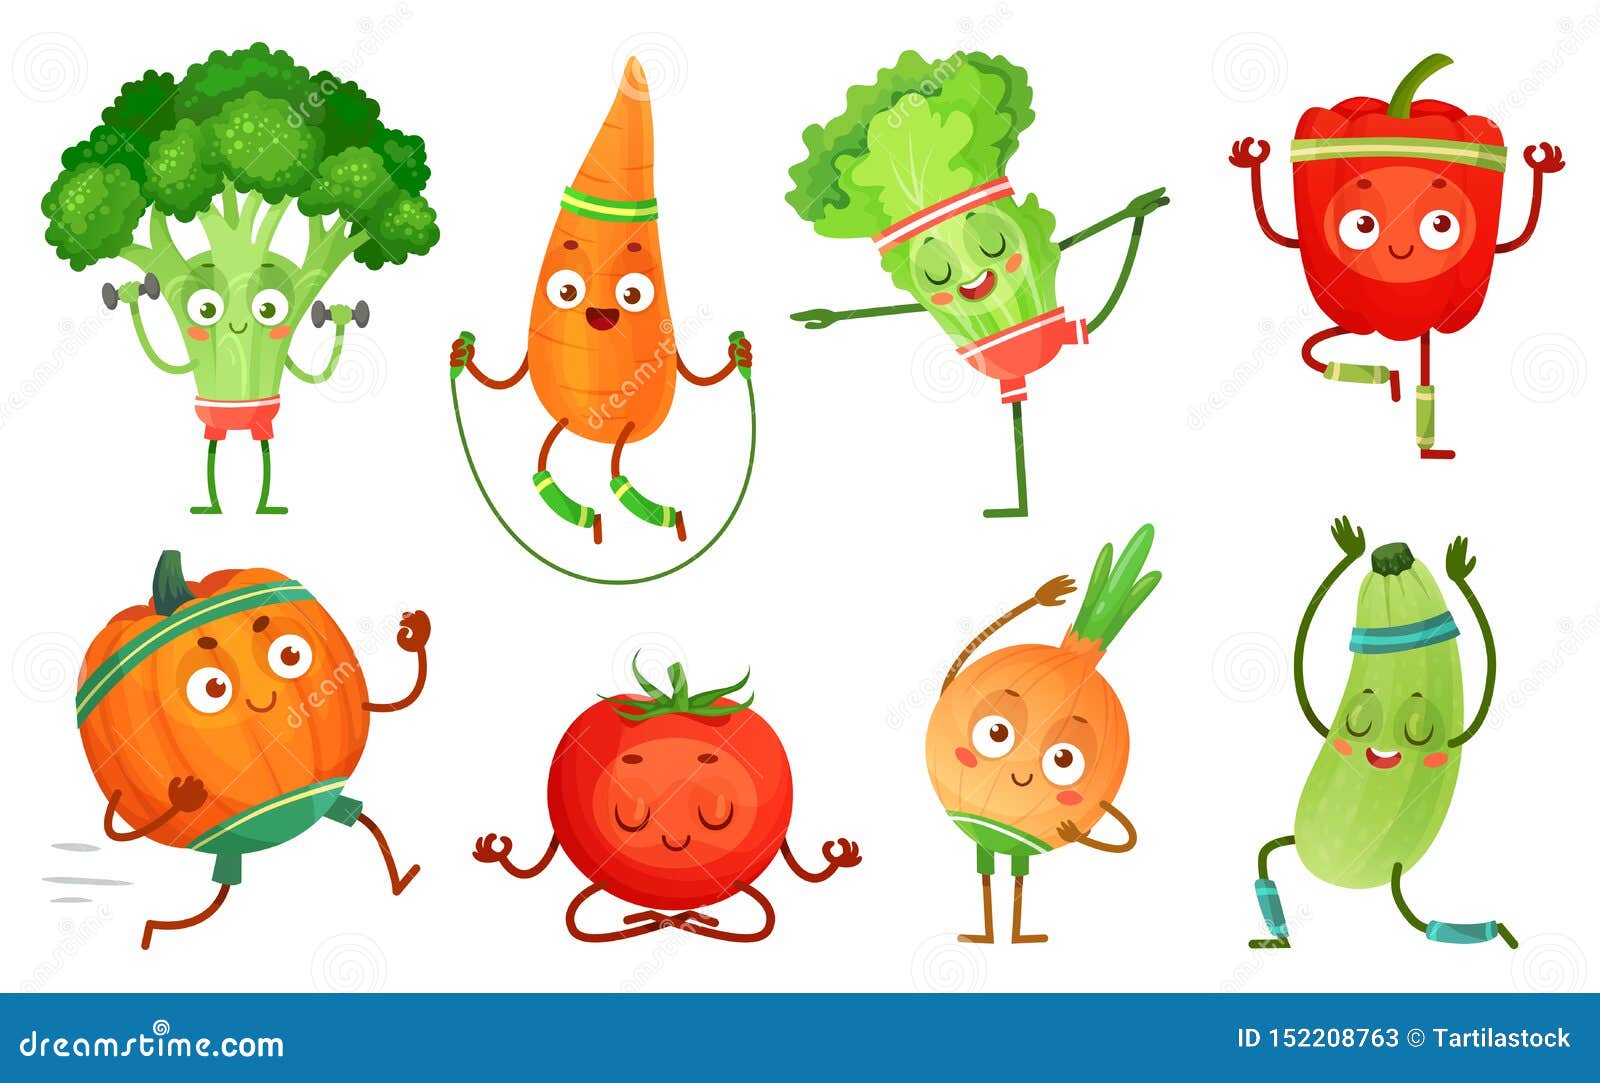 Cartoon Vegetables Stock Illustrations – 65,341 Cartoon Vegetables Stock  Illustrations, Vectors & Clipart - Dreamstime